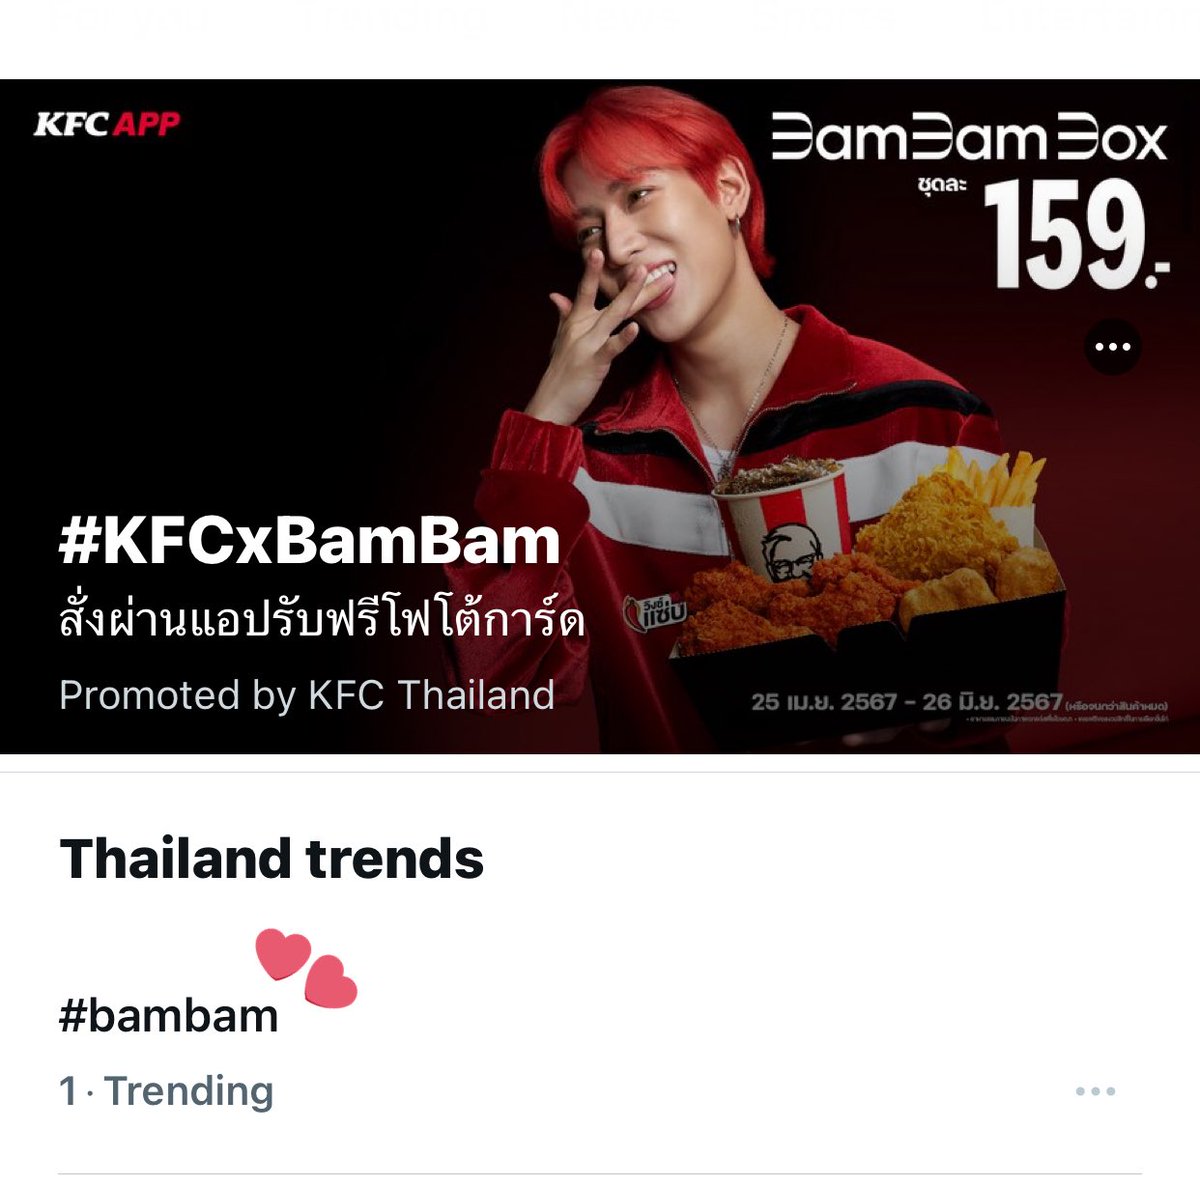 ตื่นมาพบสิ่งนี้ แท็กชื่อ #bambam ขึ้นที่ 1 เทรนด์ไทย 😁 #KFCxBamBam